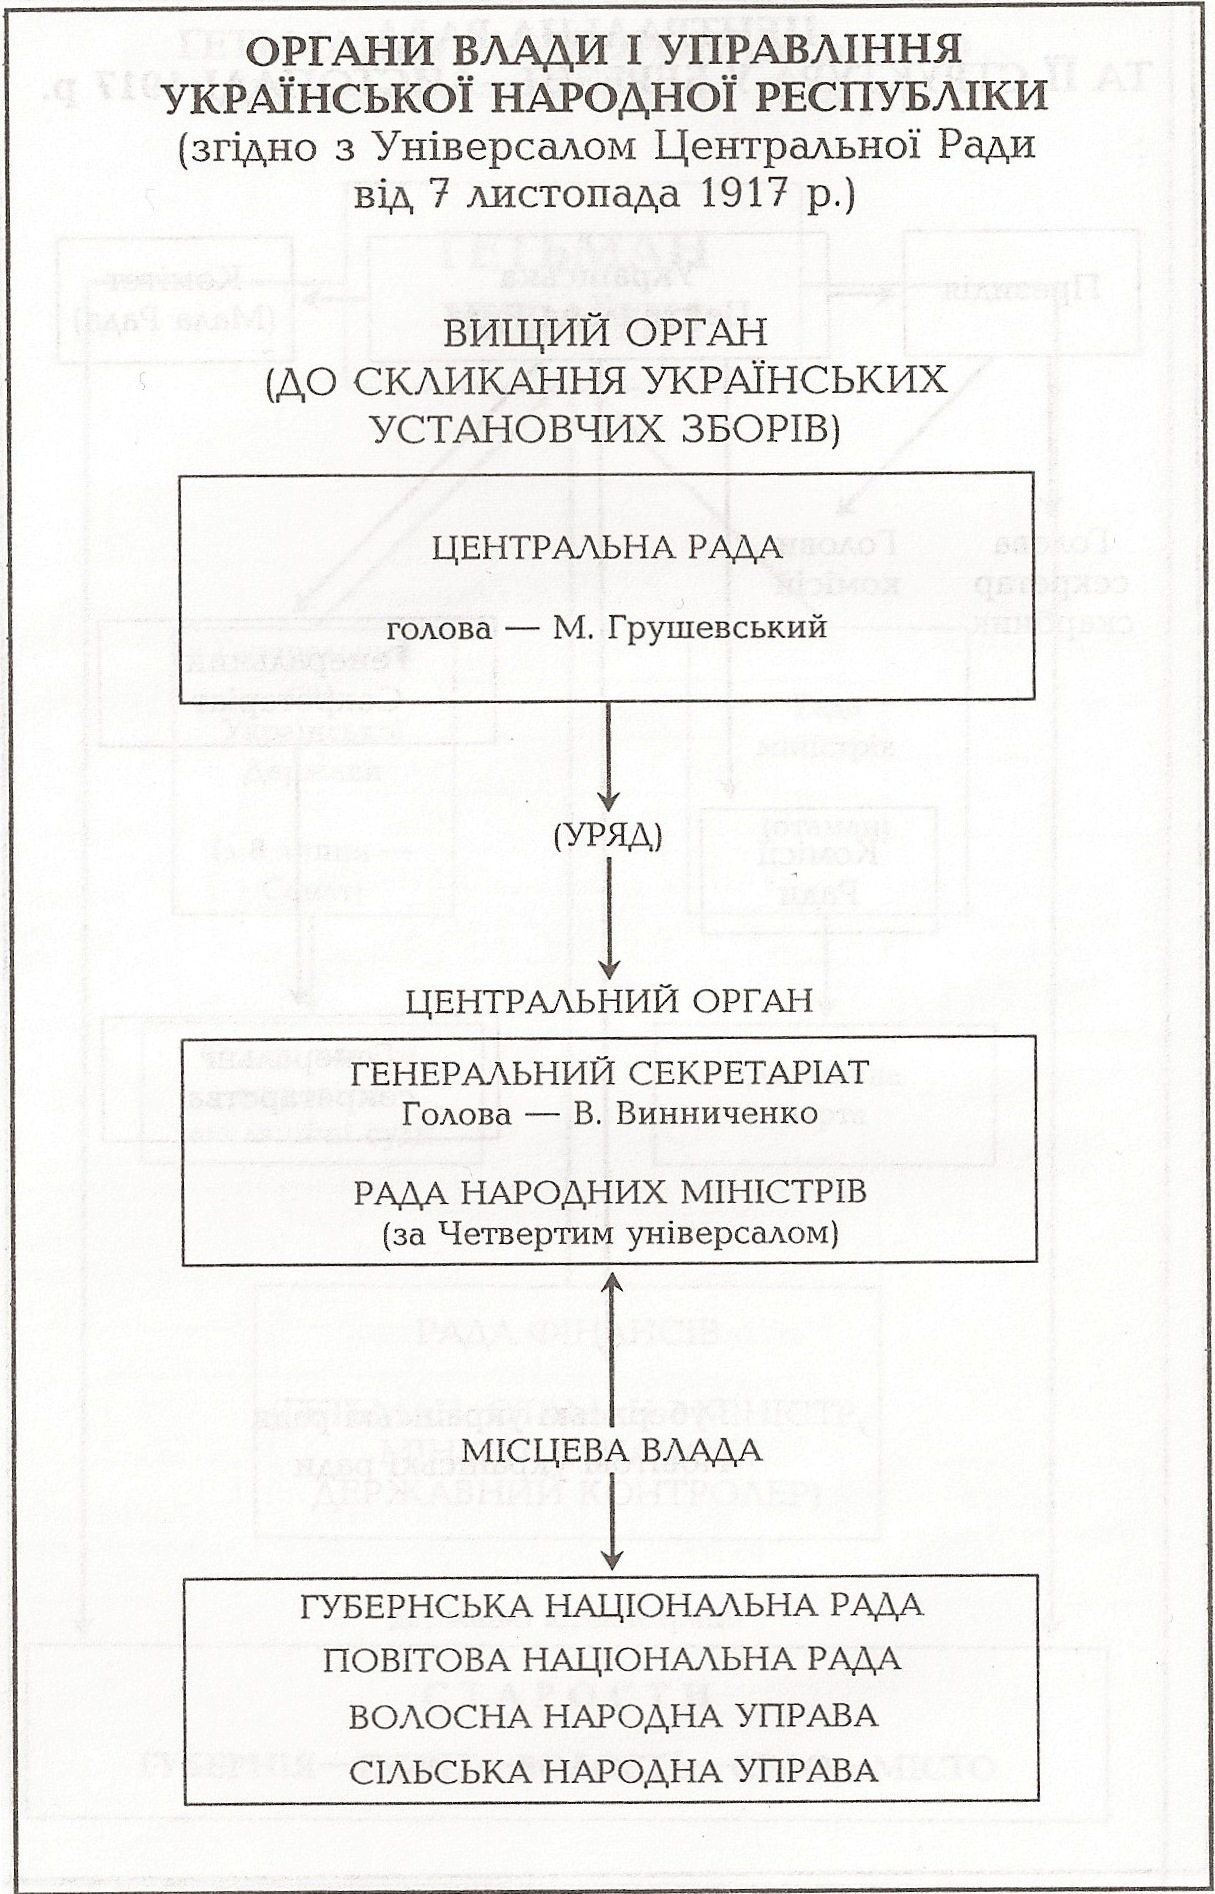 Таблиця: Органи влади і управління Української Народної Республіки (згідно з Універсалом Центральної Ради від 7 листопада 1917 р.)